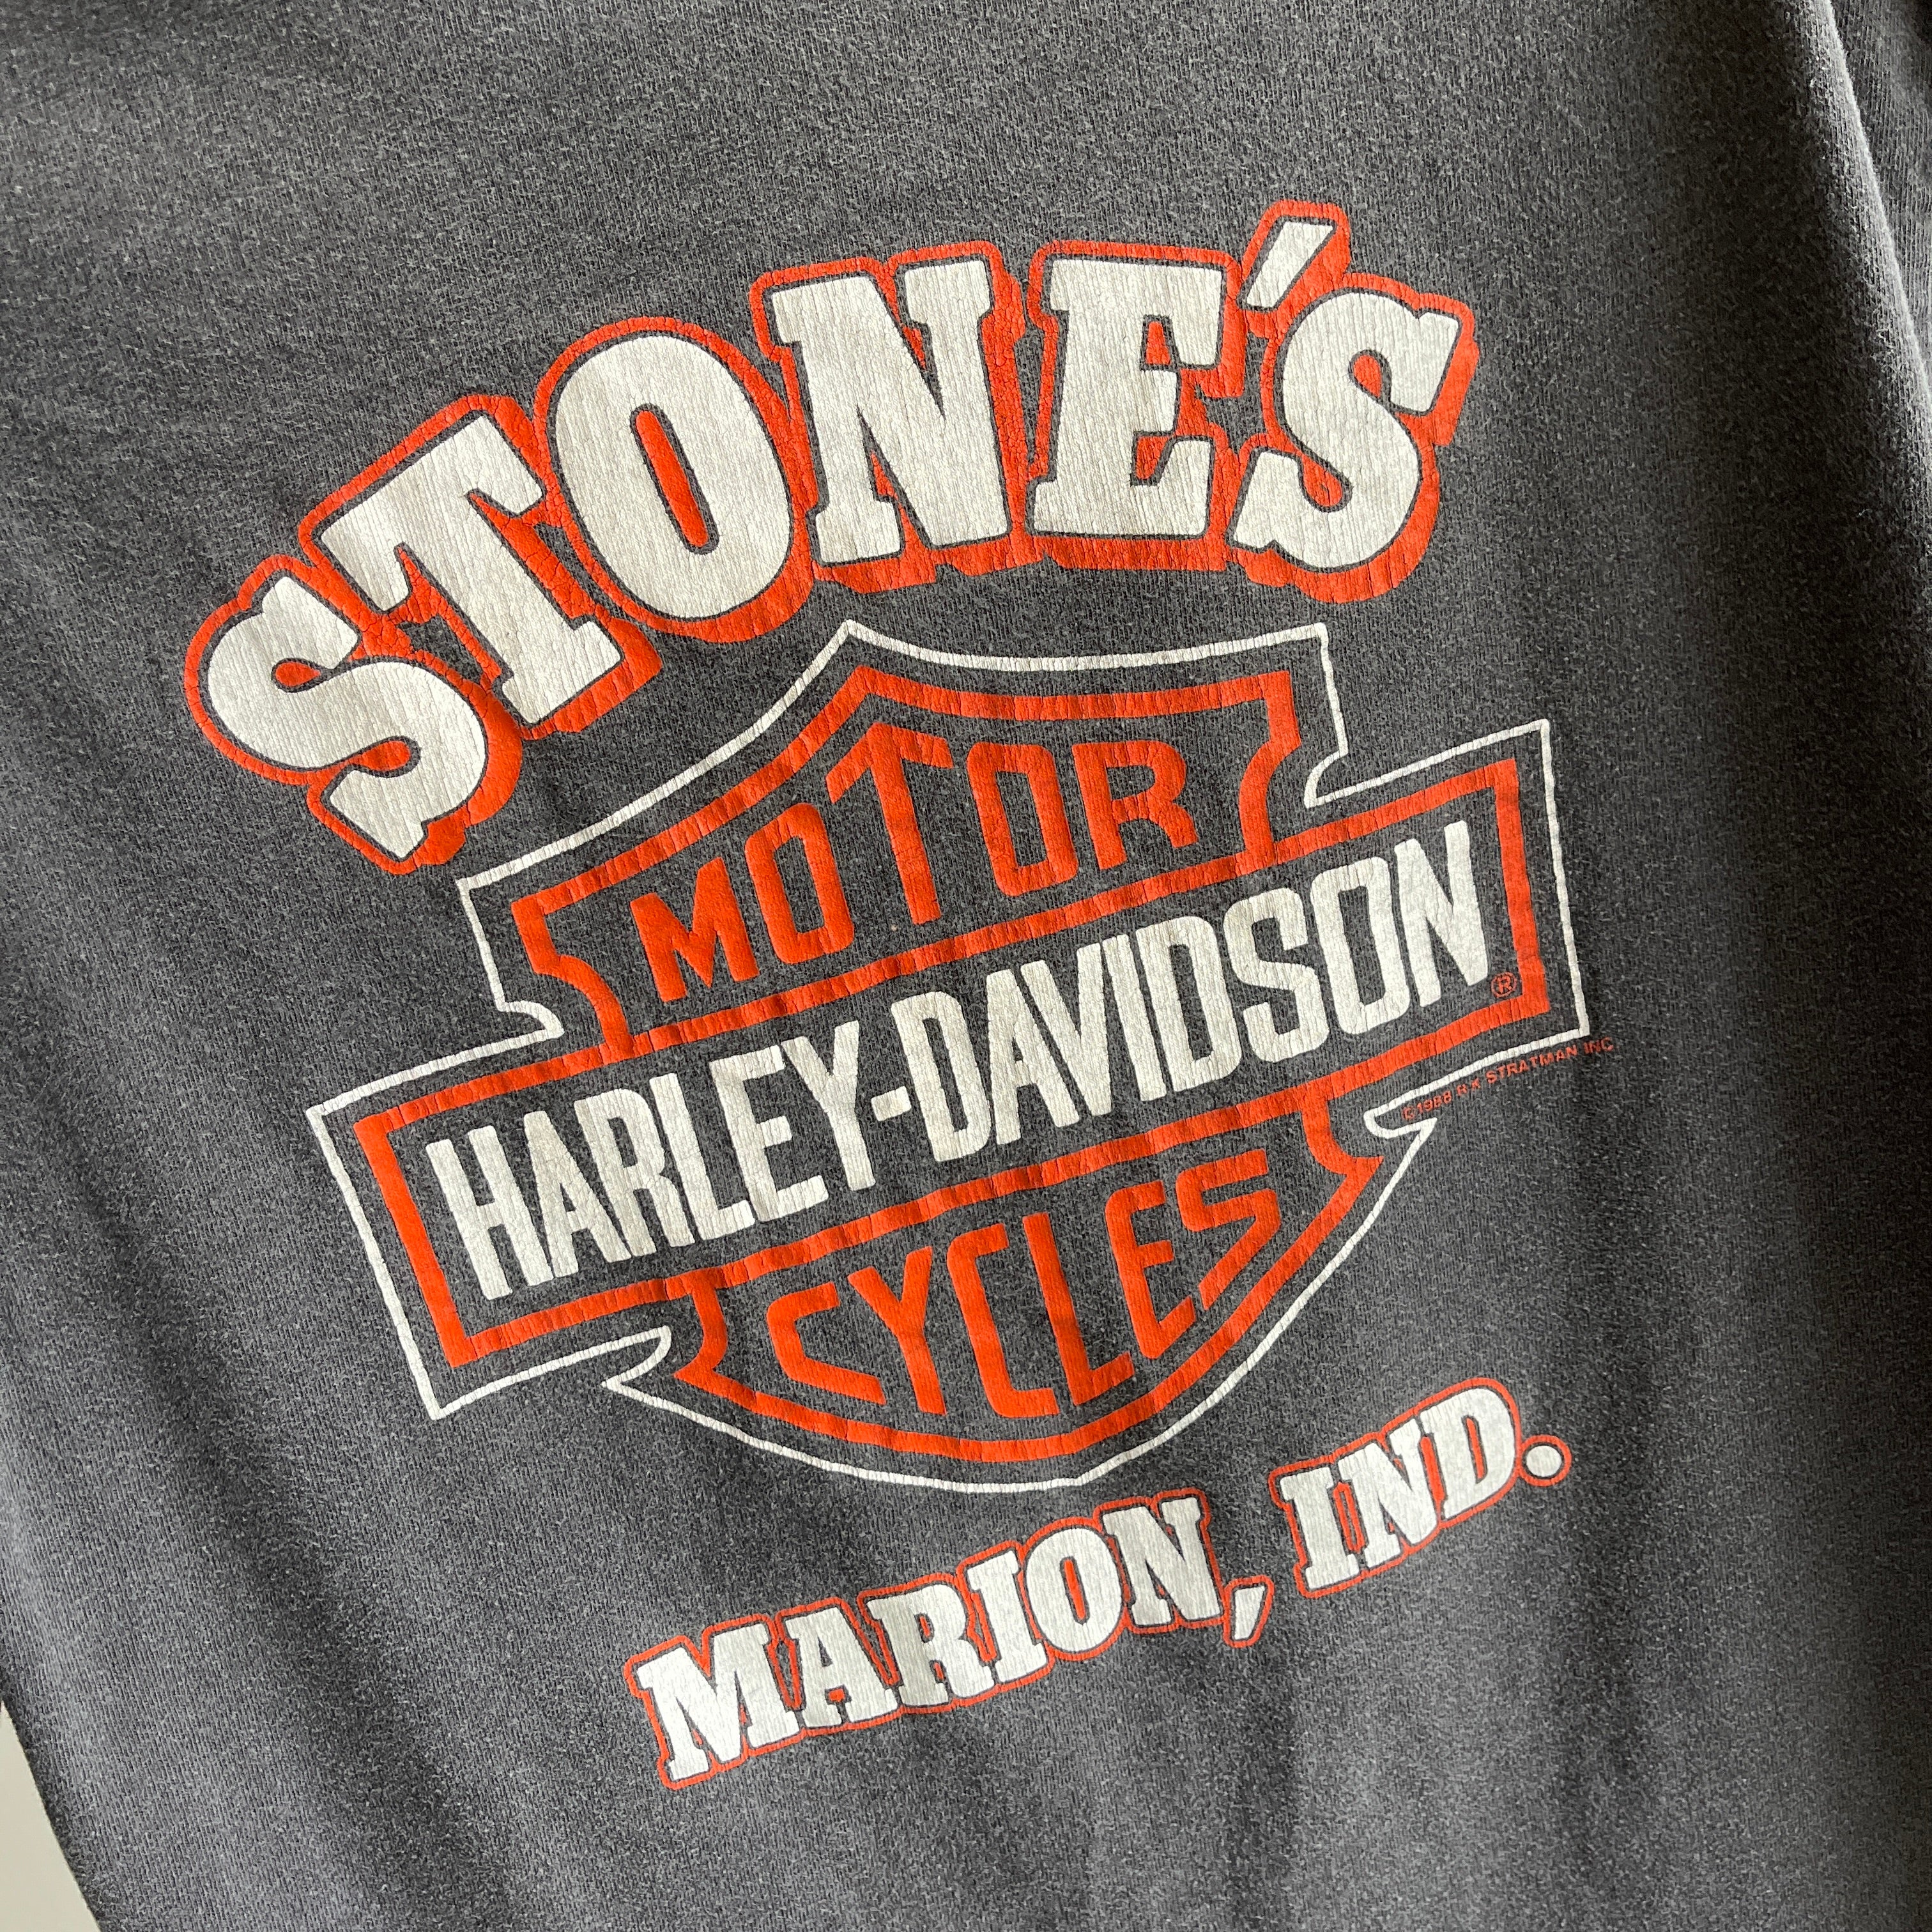 T-shirt Harley Davidson des années 1980